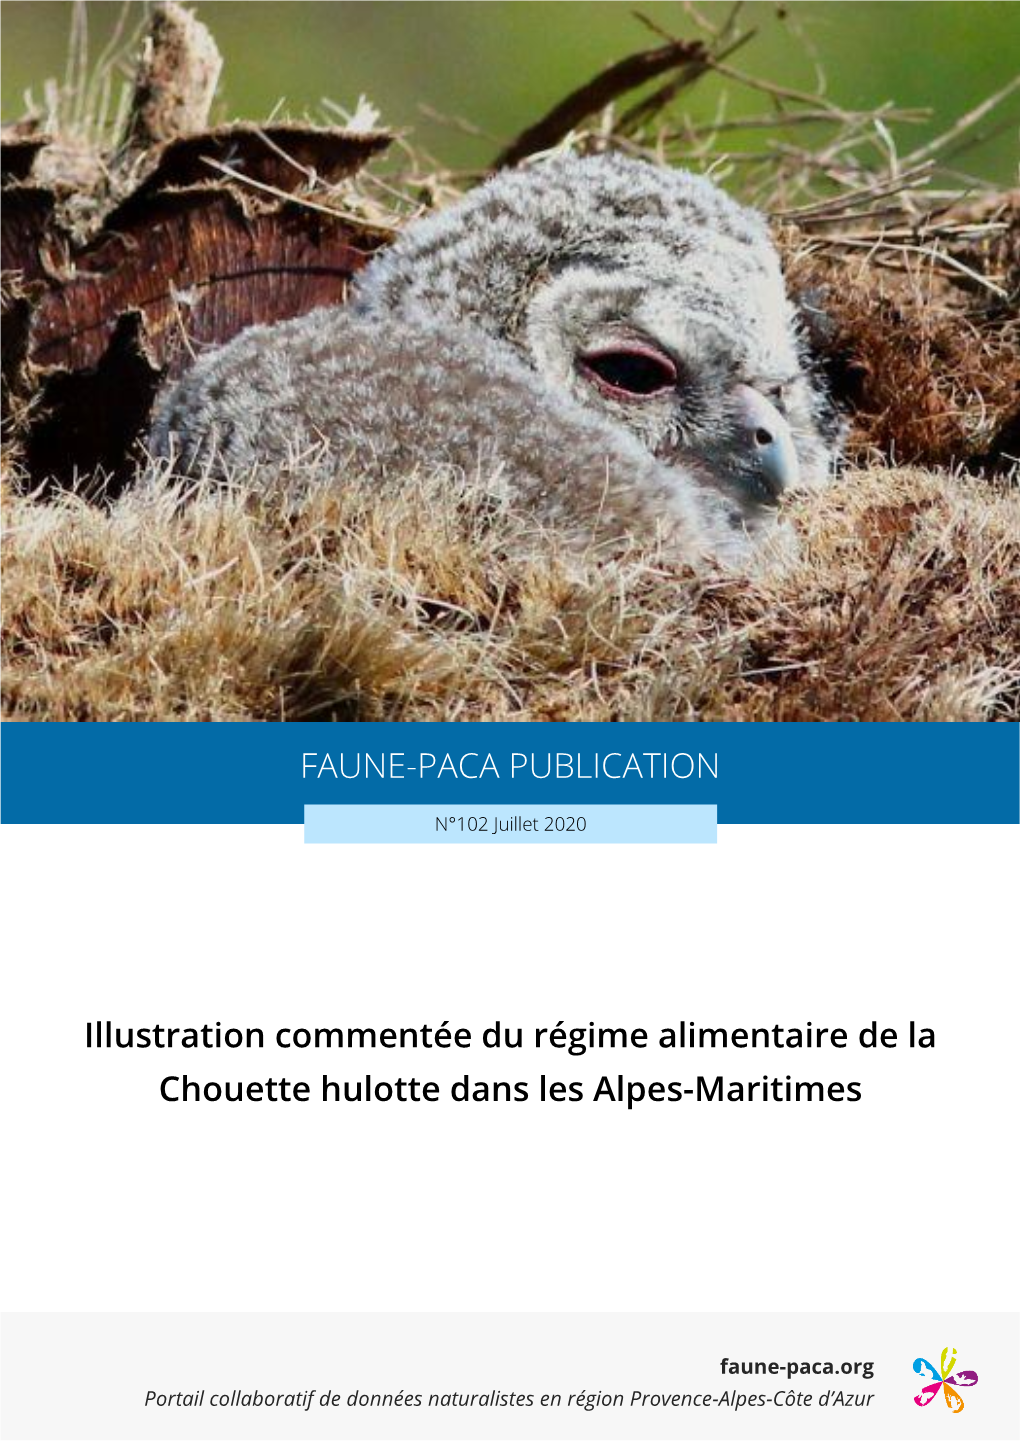 Illustration Commentée Du Régime Alimentaire De La Chouette Hulotte Dans Les Alpes-Maritimes